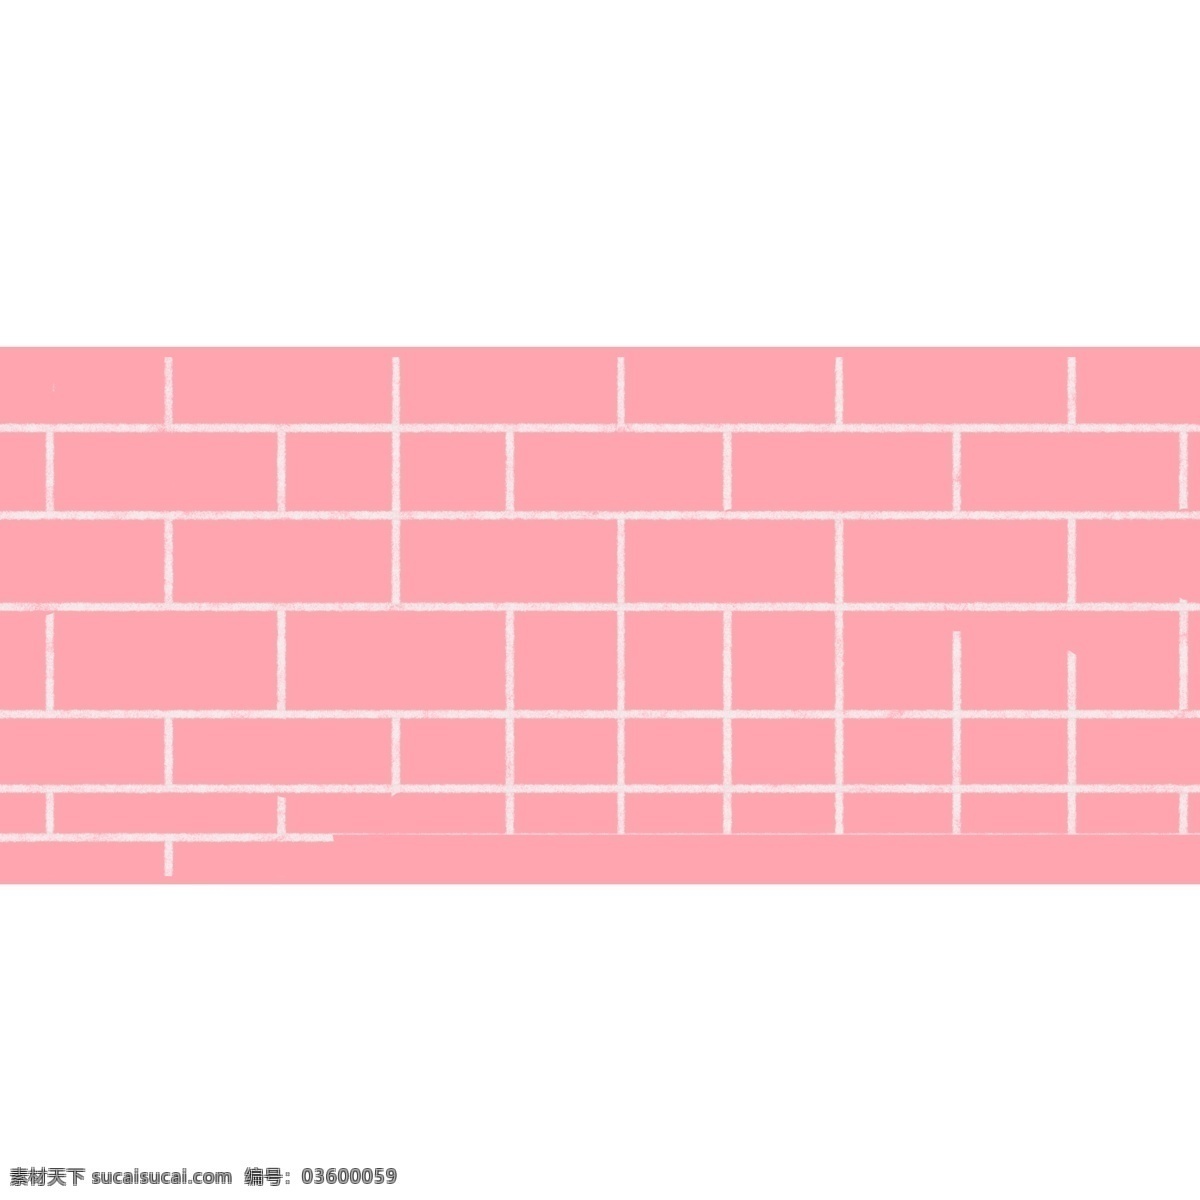 手绘 粉色 砖头 墙壁 墙 砖头墙 粉色砖头 粉色墙壁 粉碎砖头墙壁